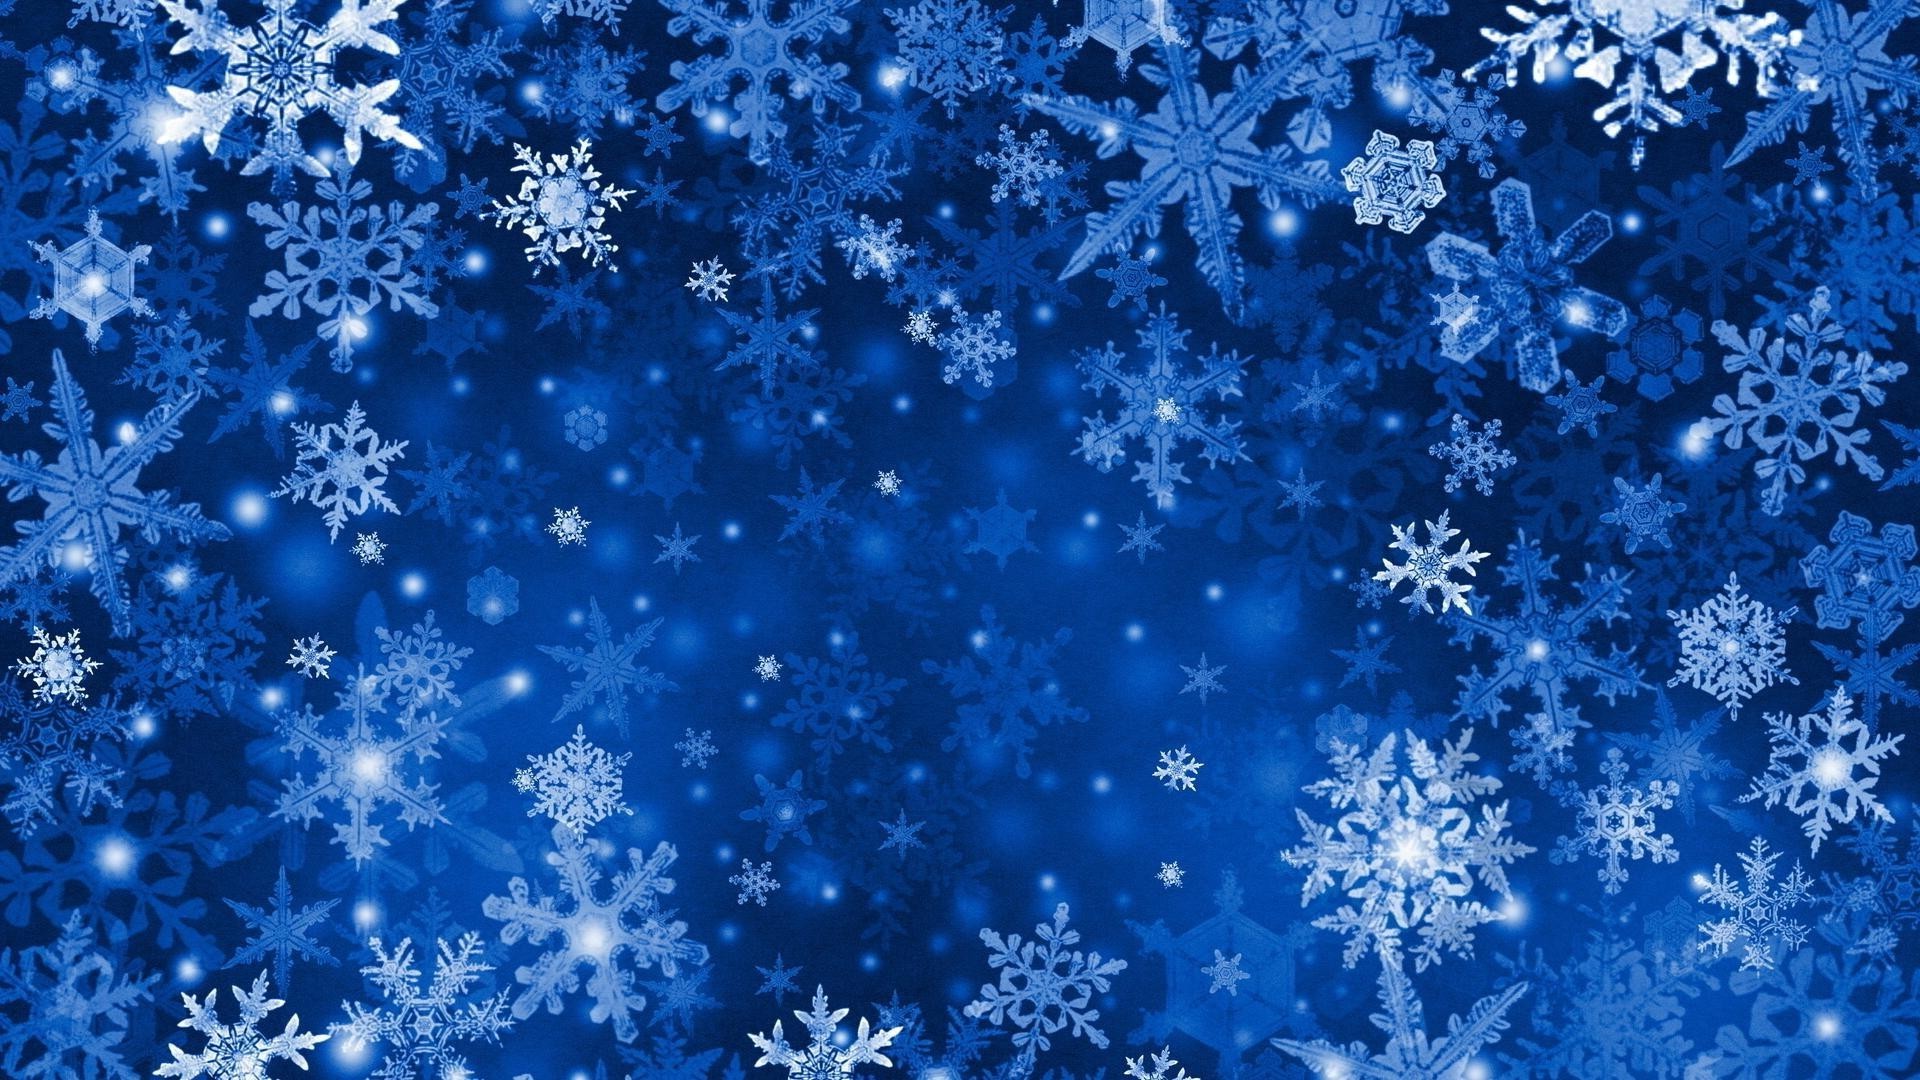 стекло рождество снежинка зима снег мороз украшения аннотация шаблон кристалл блестят обои рабочего стола карта иллюстрация дизайн мерри фон лед искусство